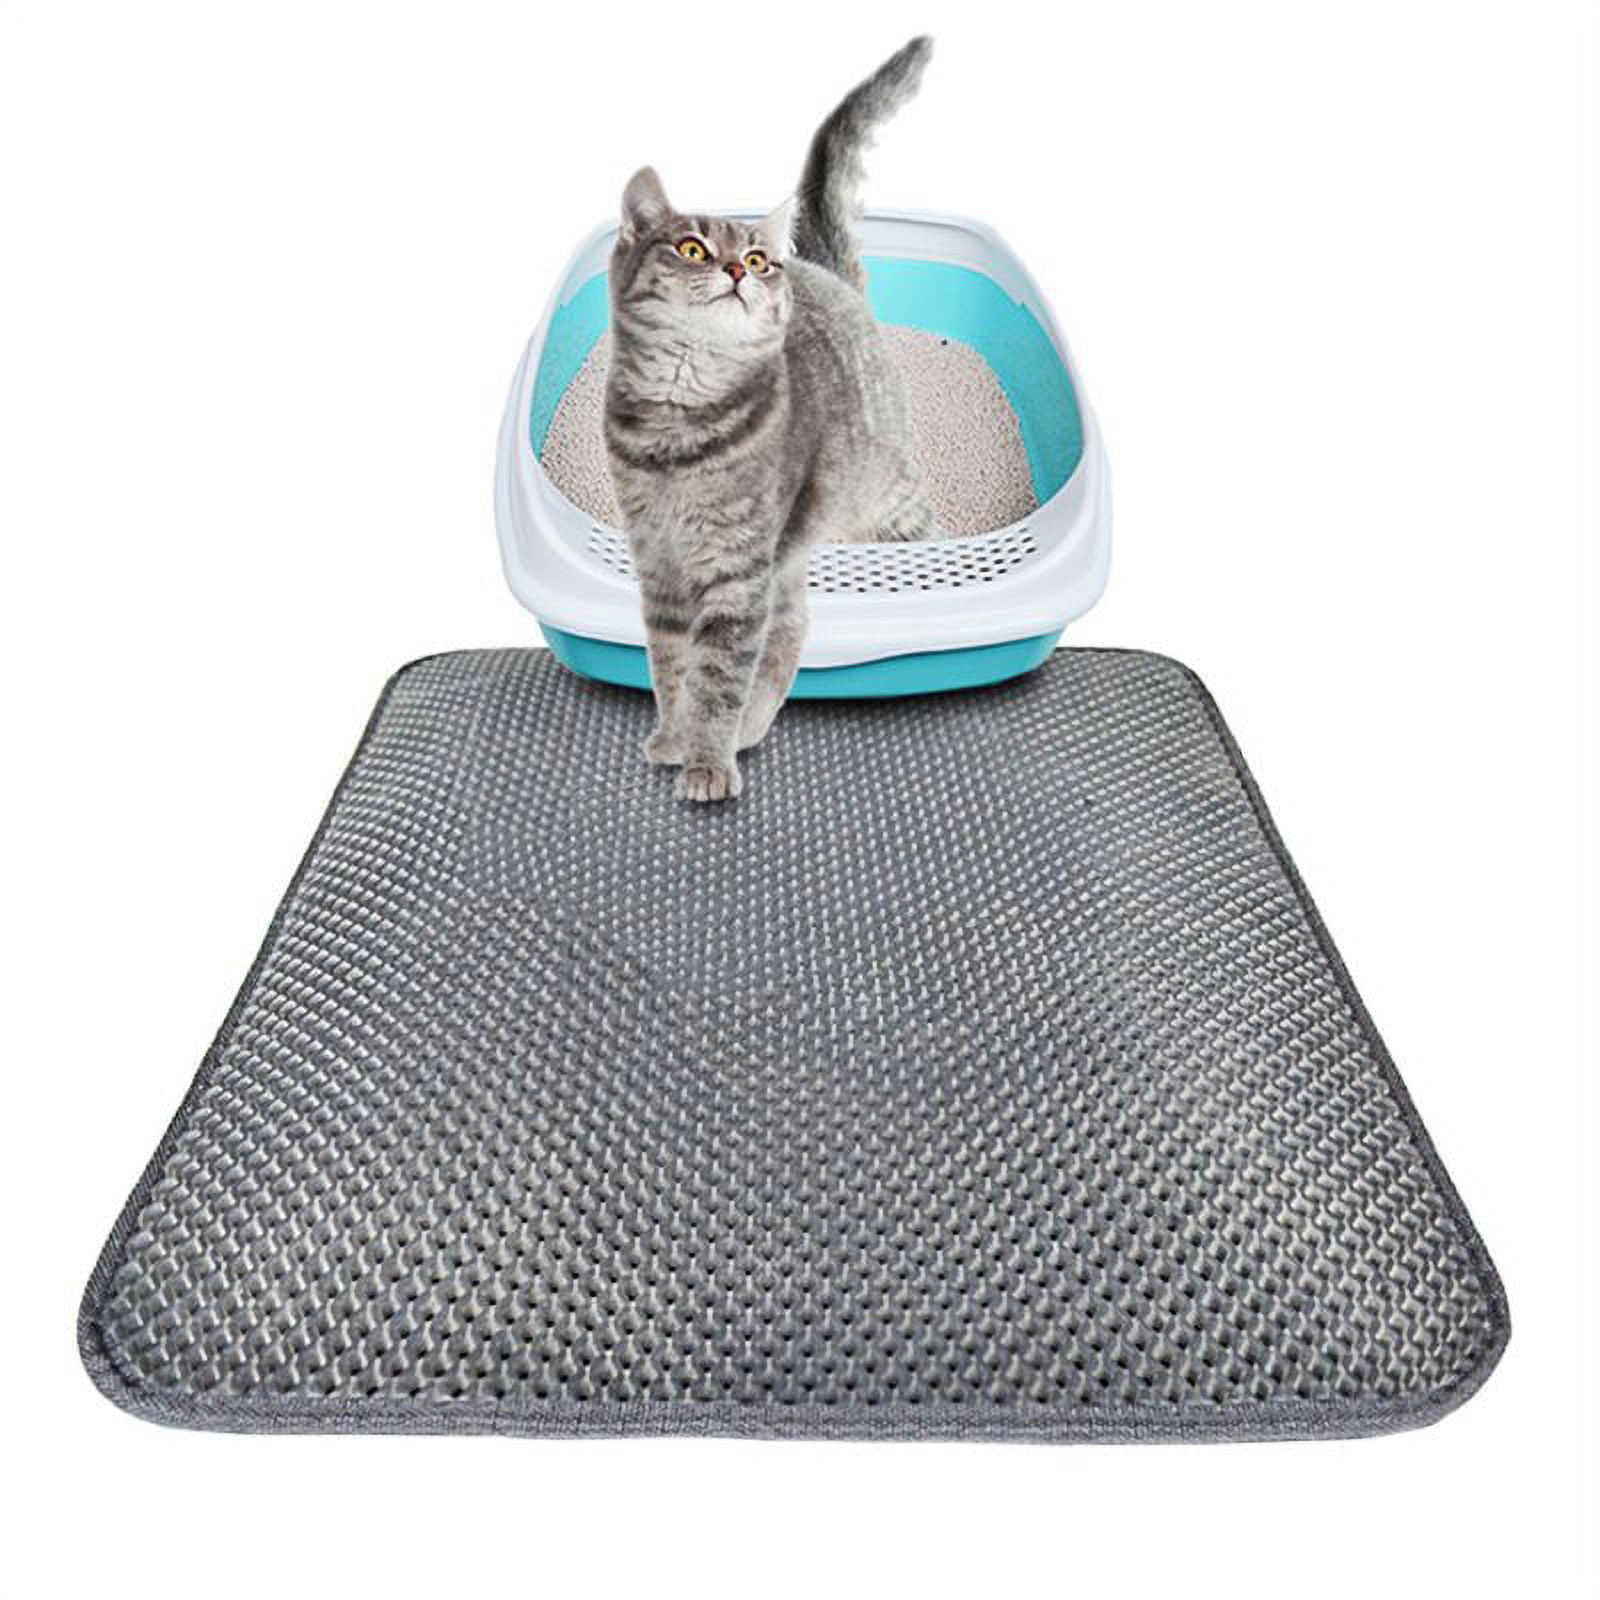  PETUPPY Premium Durable Cat Litter Mat, XL Size 47X36